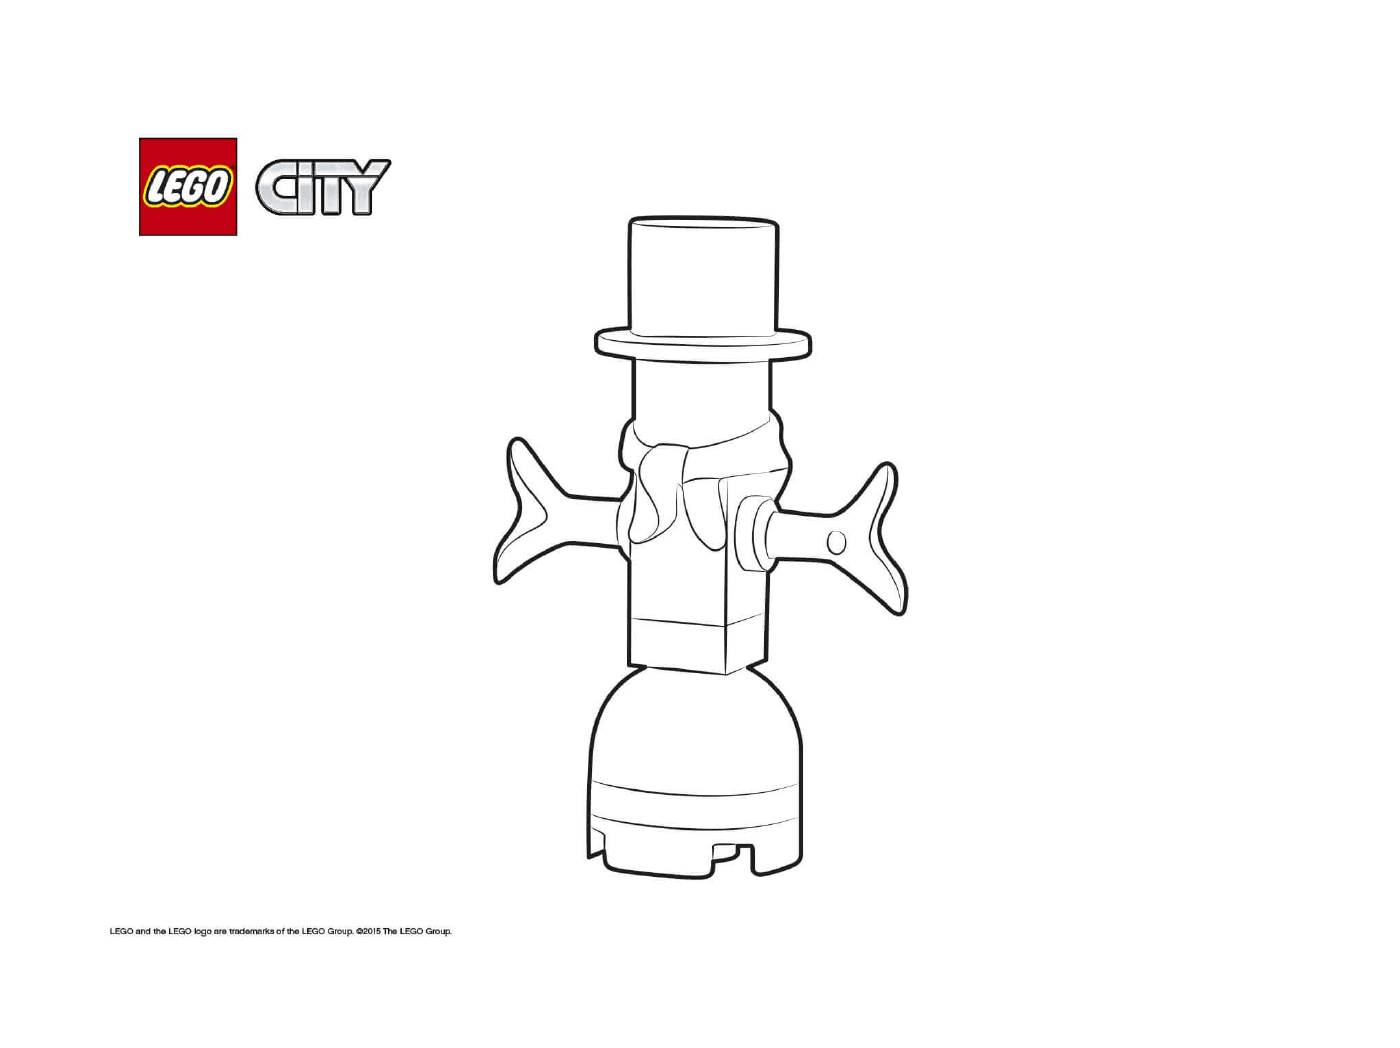   Calendrier de l'Avent Lego City 